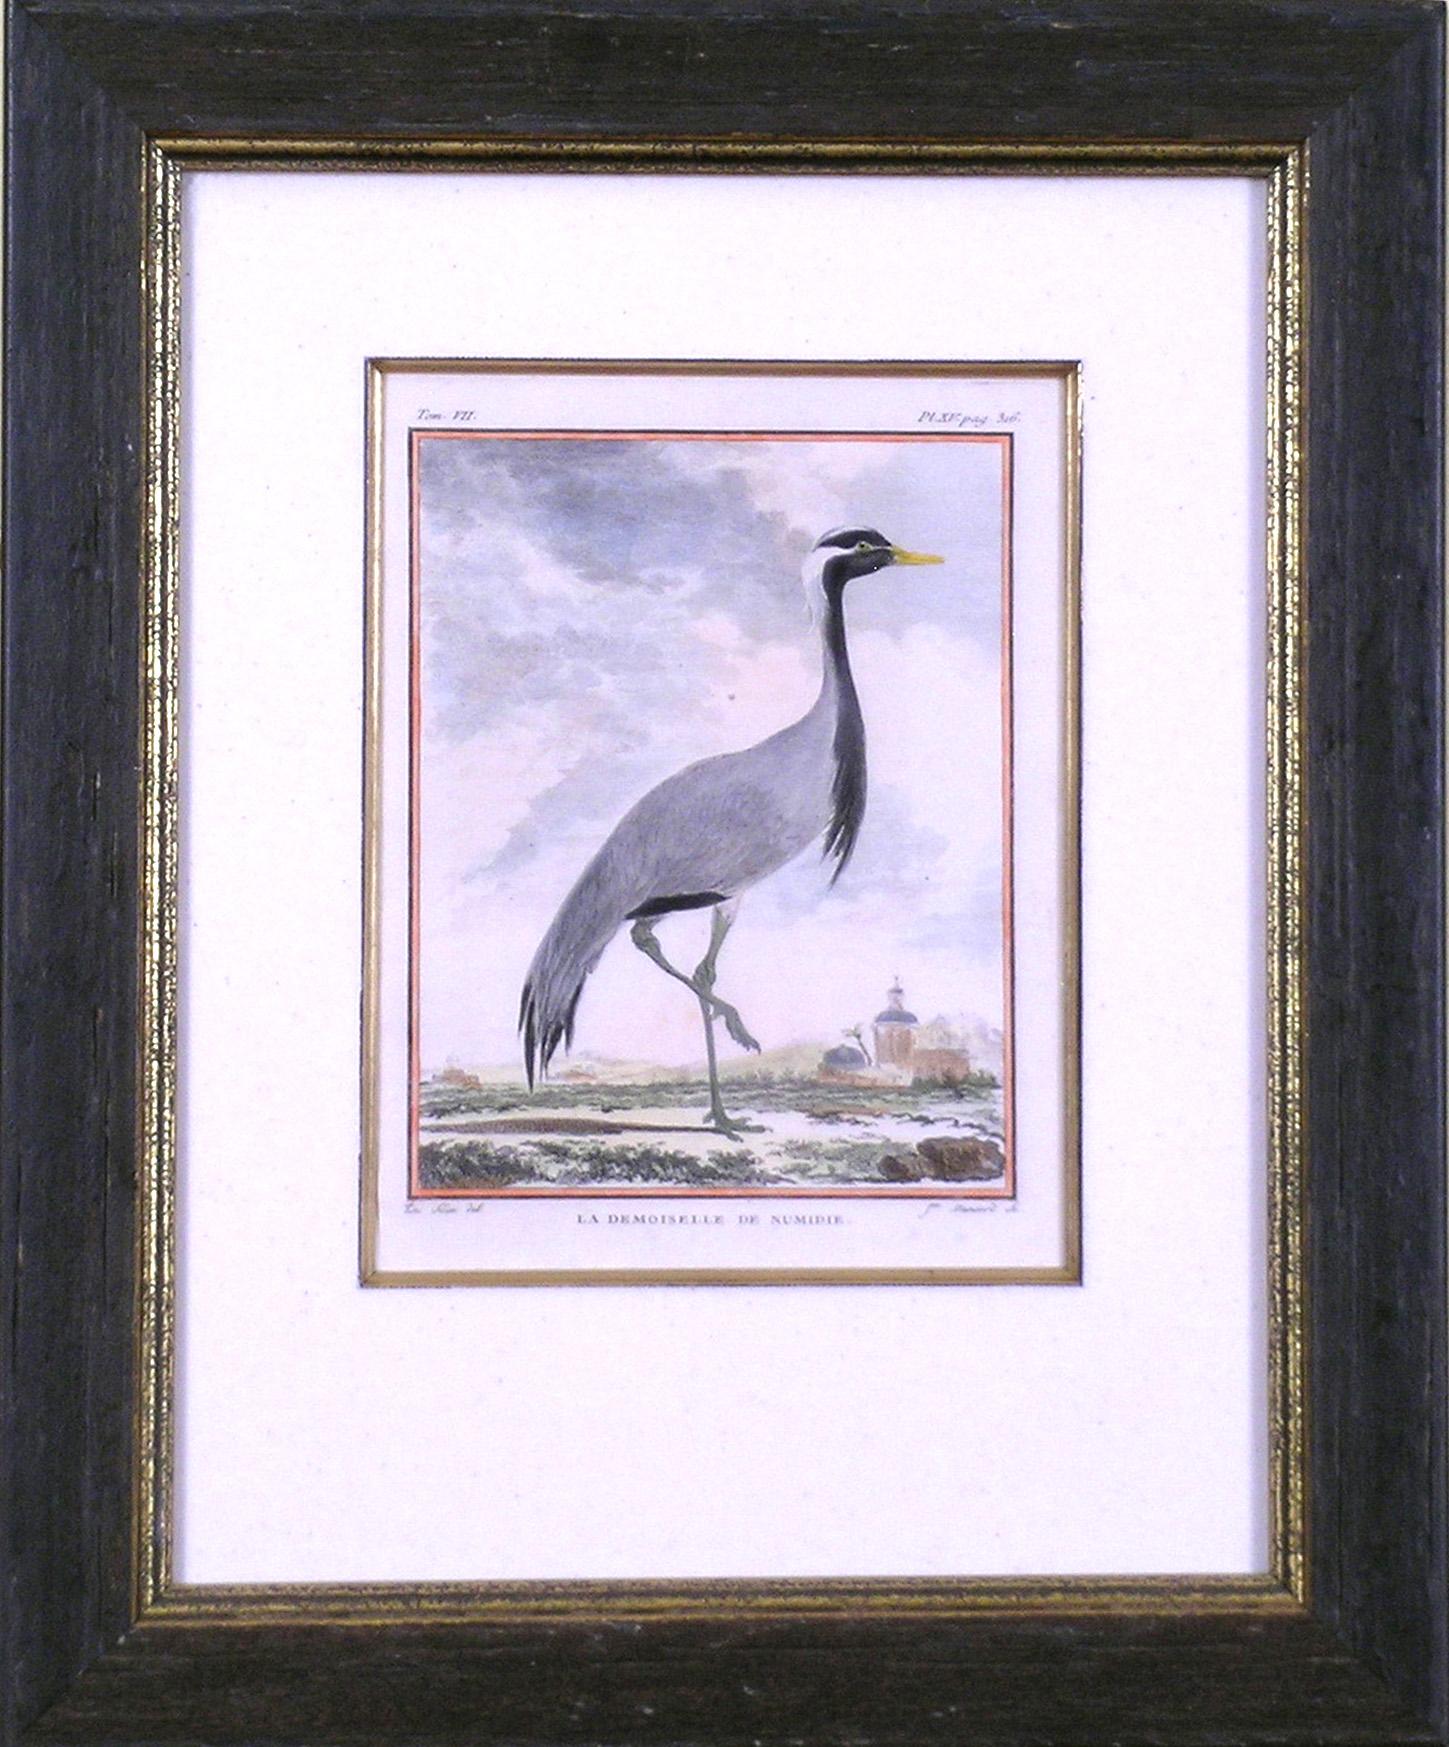 La Demoiselle de Numidie (Crane) - Print by Georges-Louis Leclerc, Comte de Buffon